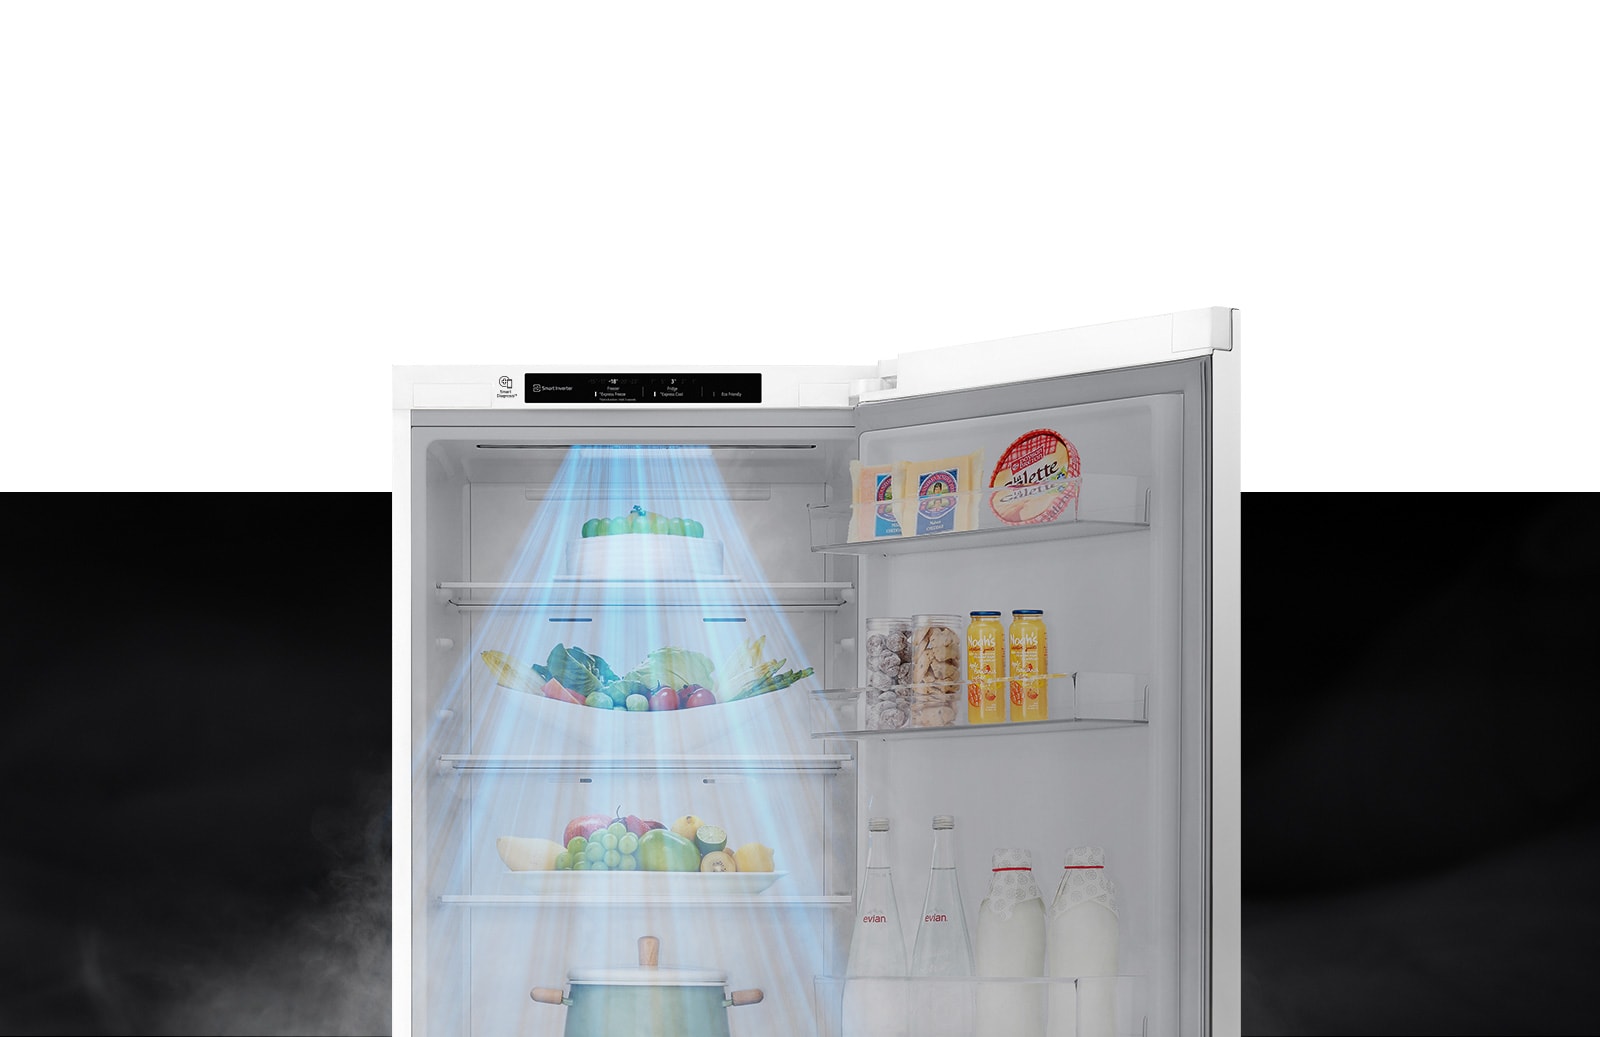 Верхняя половина холодильника показана с открытой дверью. Внутри полки заполнены продуктами и напитками, а порыв ветра спускается сверху для охлаждения продуктов.